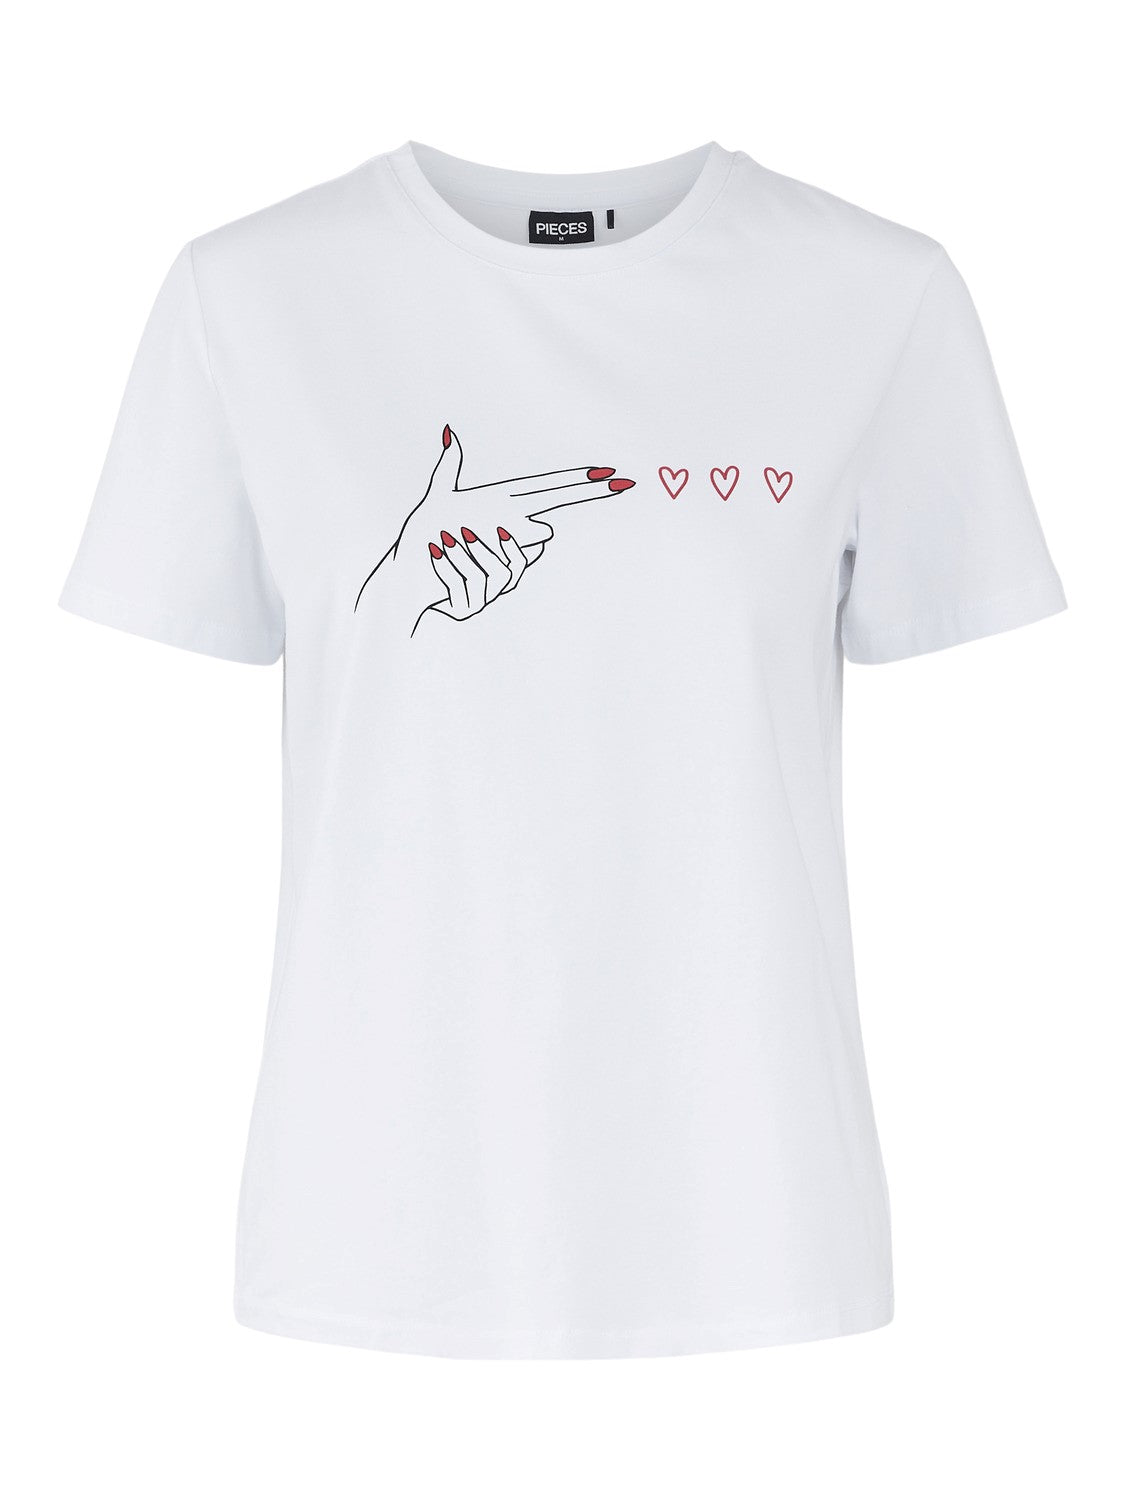 Lova T-Shirt (White)